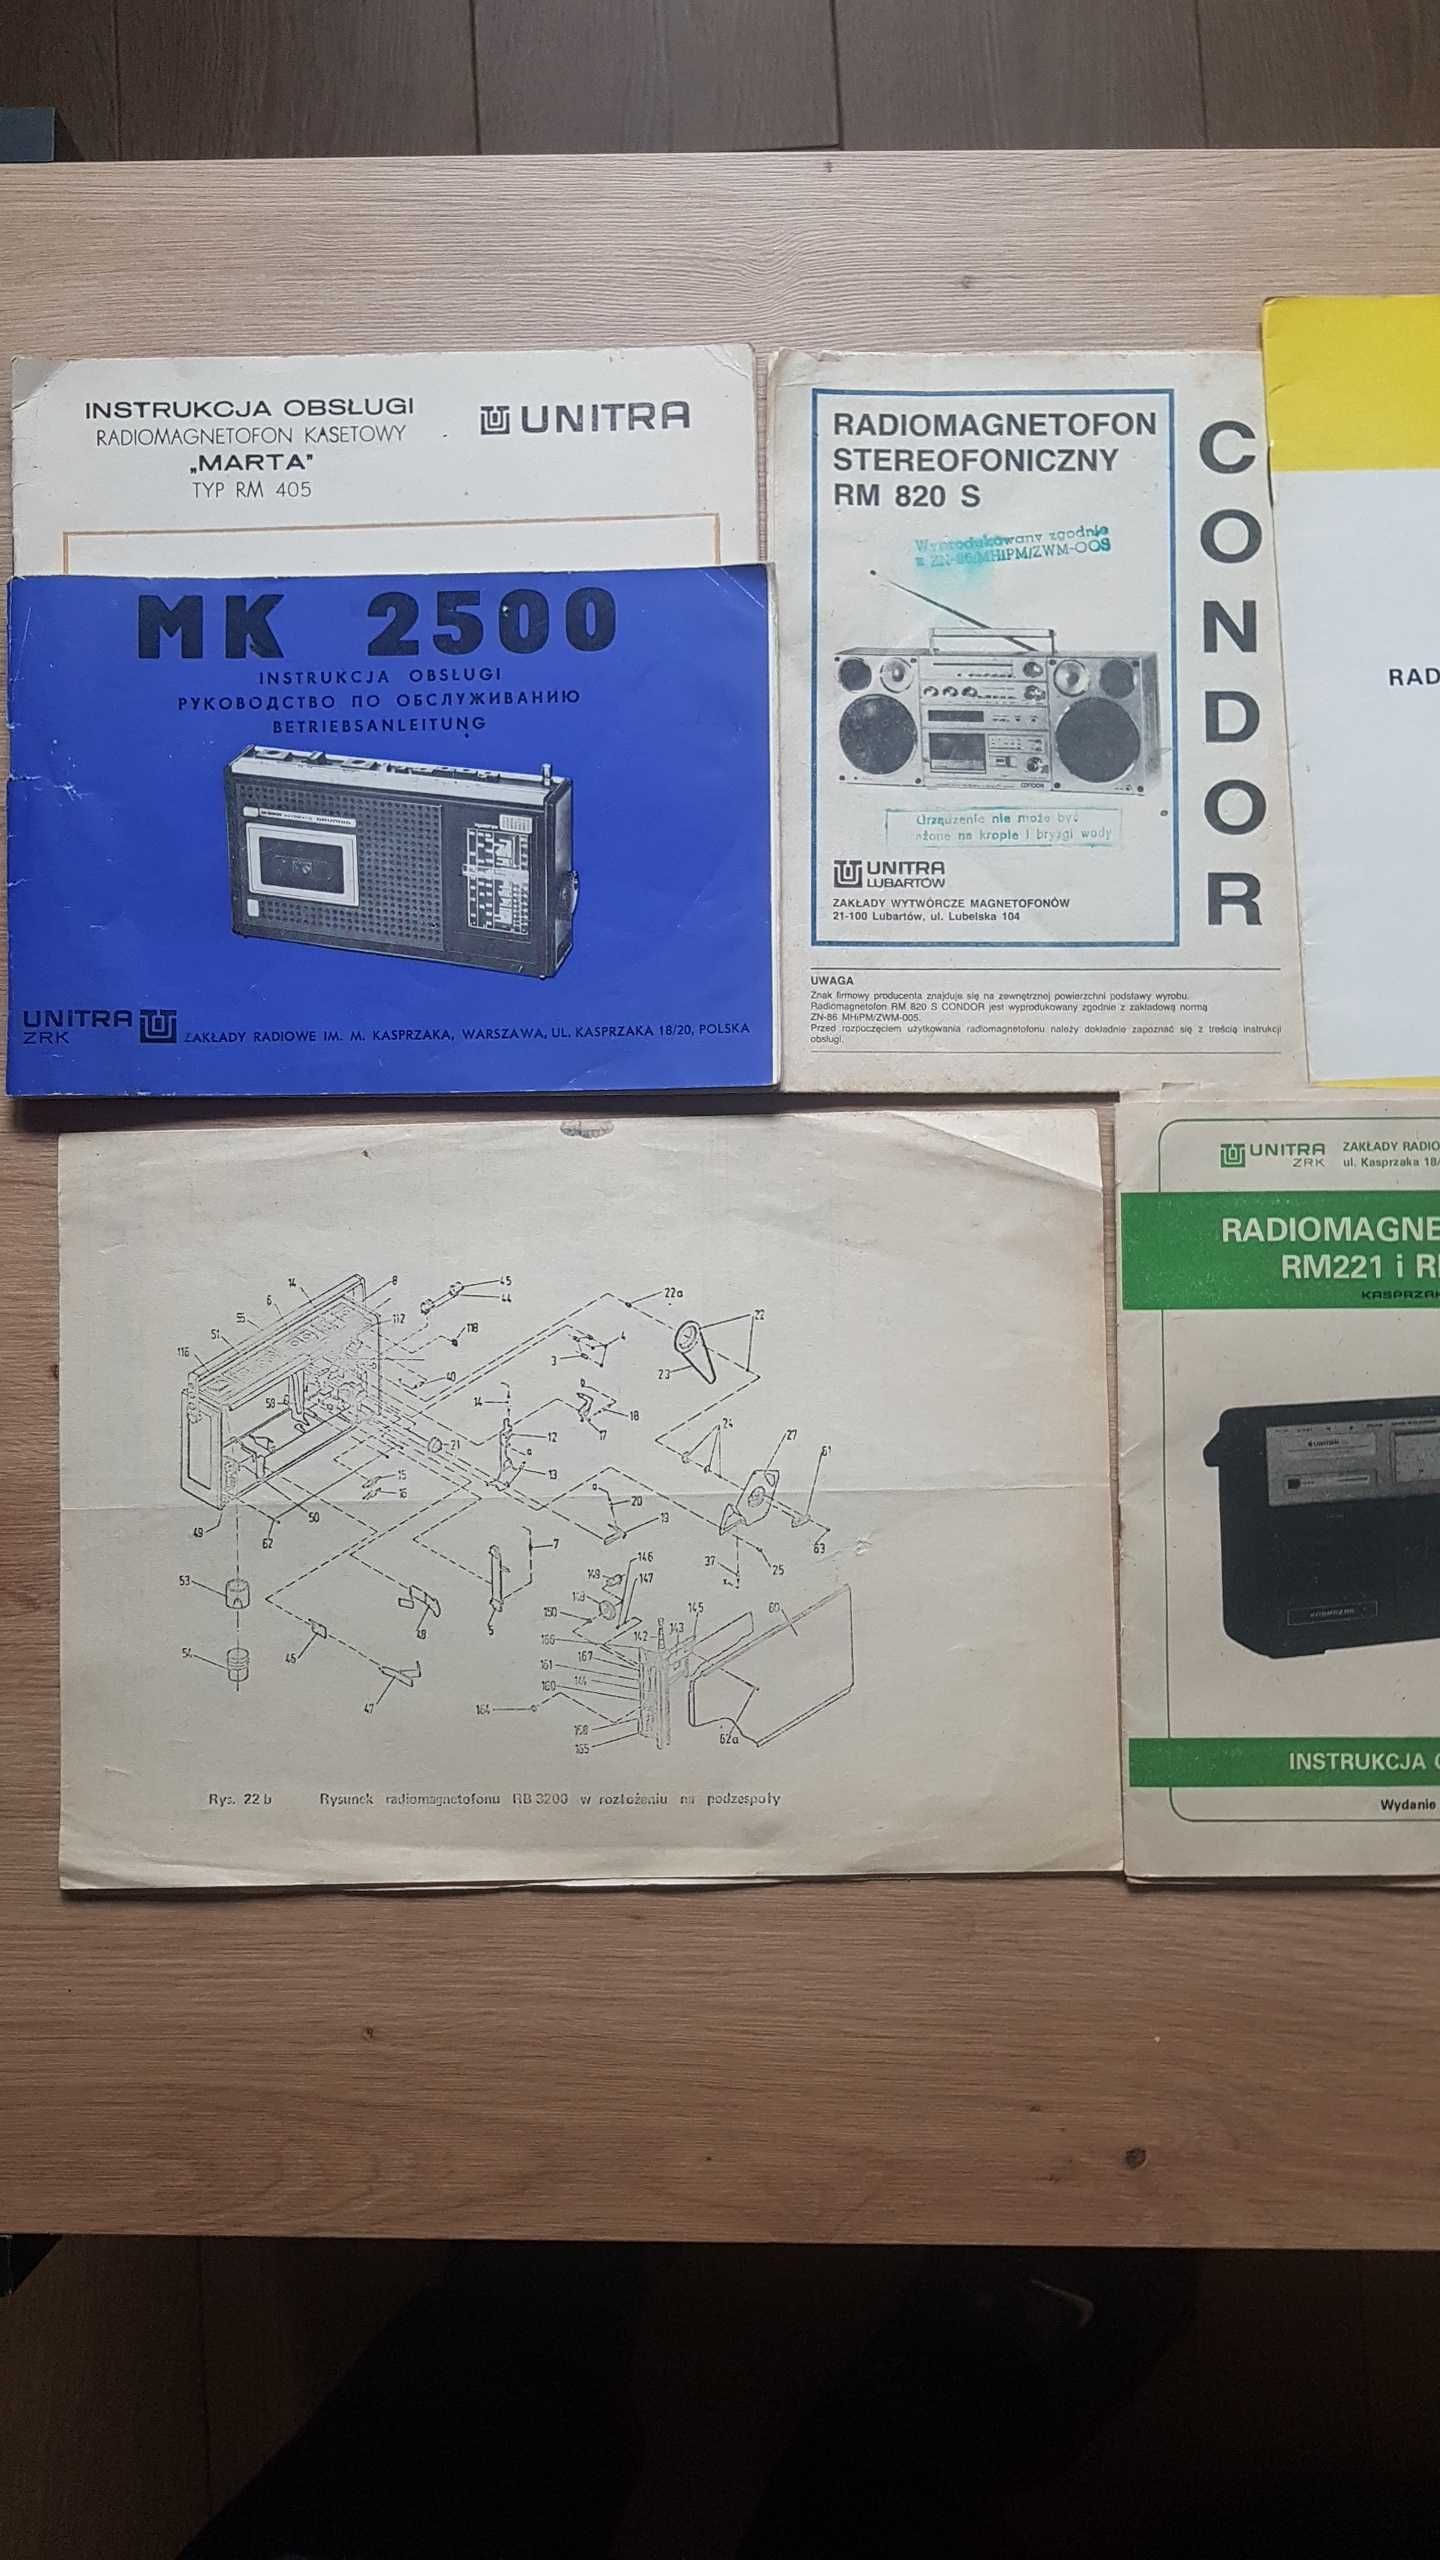 radiomagnetofon kasetowy Unitra /Eltra MK 2500A-DSU instr serw